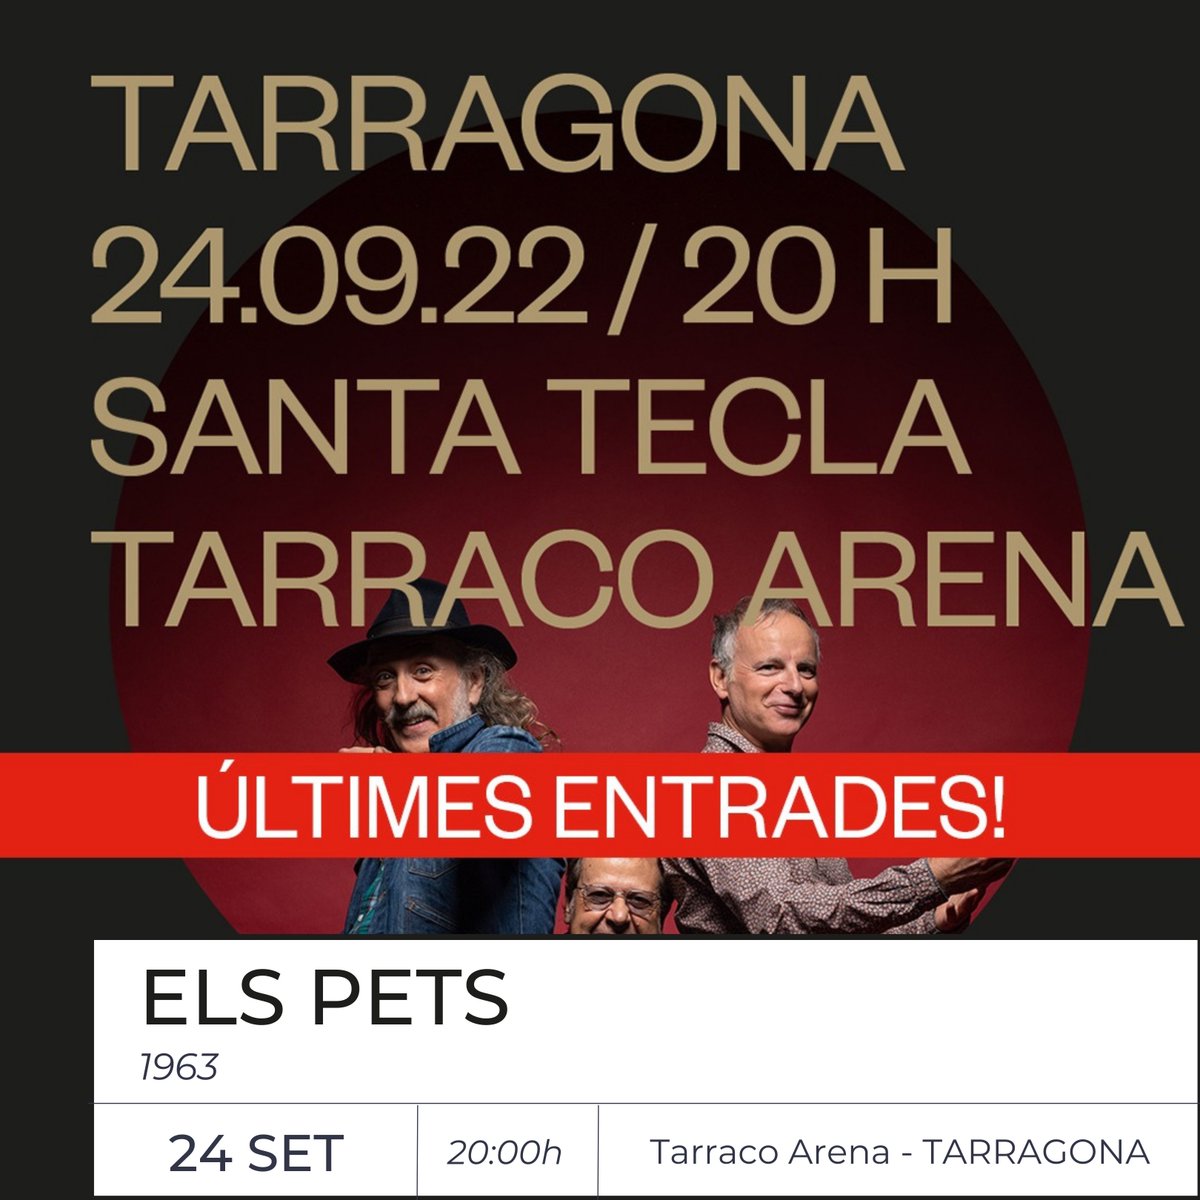 📢 Aquesta setmana tenim triplet❗️

🎵 23/09 @caimriba a Abrera 
🎵 24/09 @ElsPetsOficial a Tarragona #SantaTecla 
🎵 25/09 #XarimAresté a Barcelona #LaMercè #BAM  

A quins concerts anireu? 

#rgbmanagement #Elspets #xarimaresté #caïmriba #directe #concerts